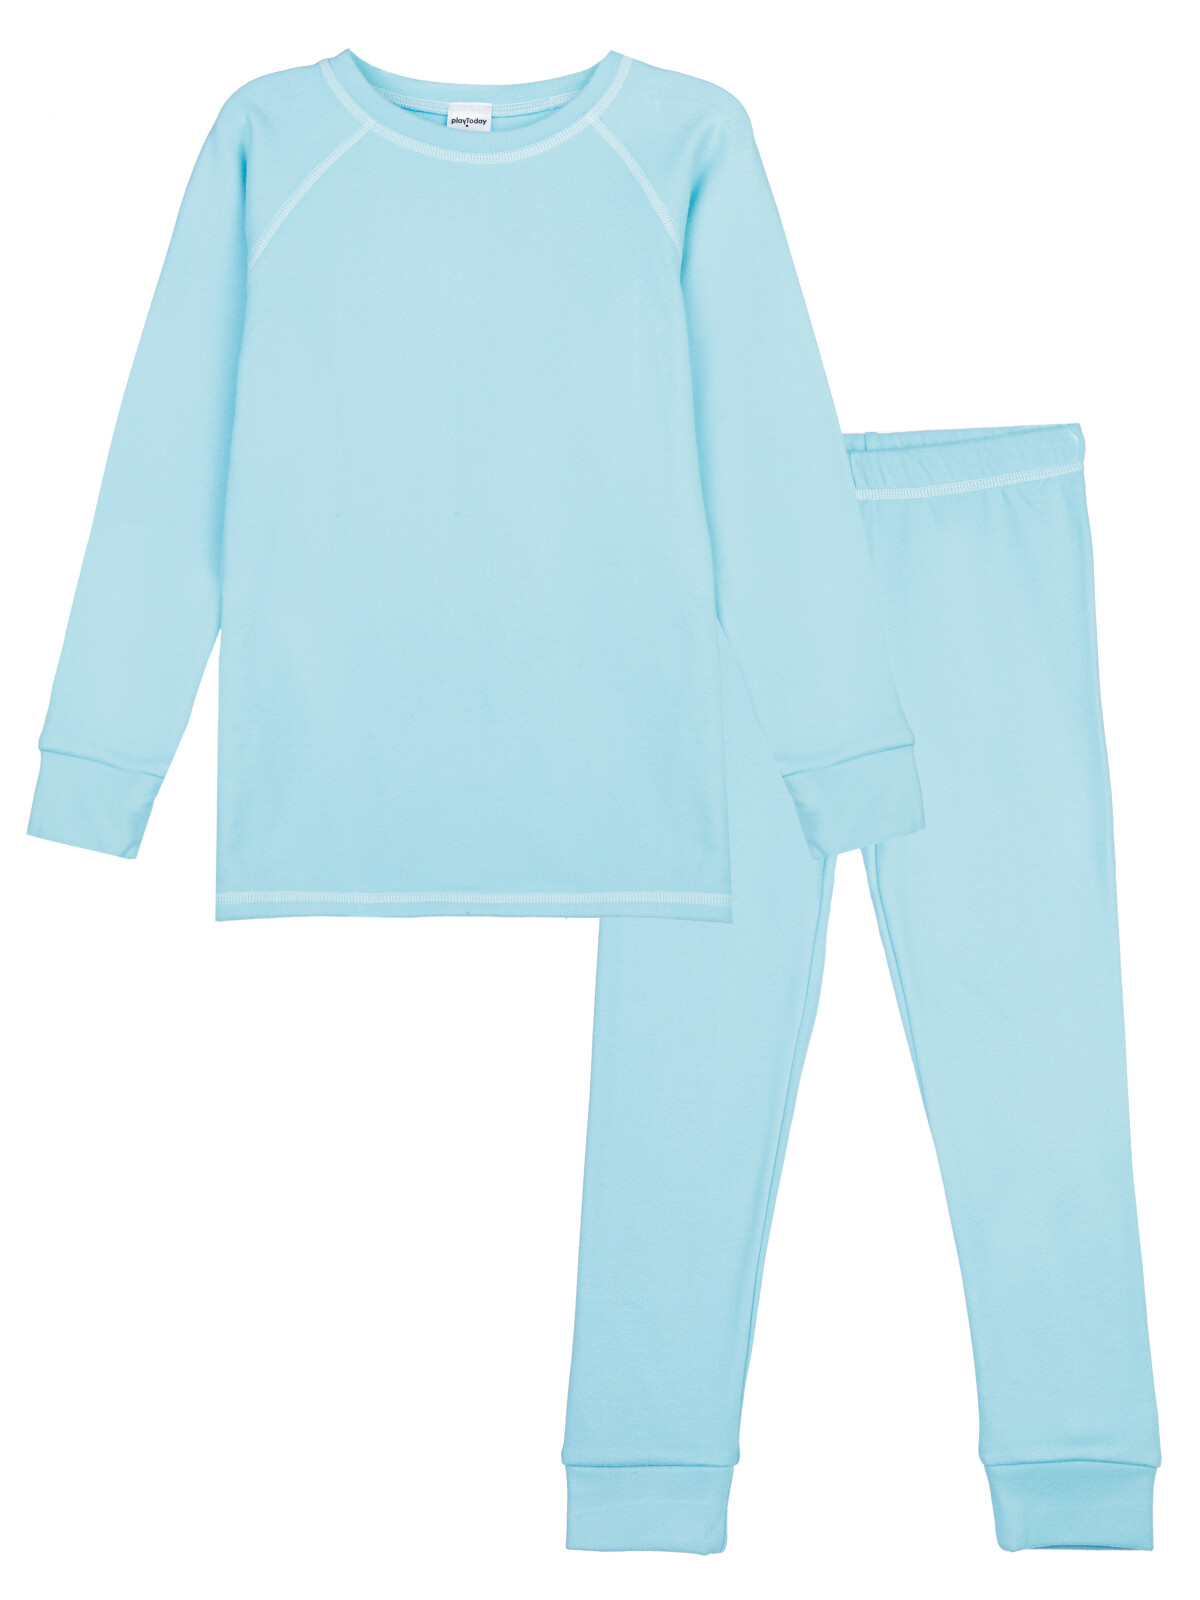 Термокомплект для девочек PlayToday: брюки, толстовка, голубой, 122